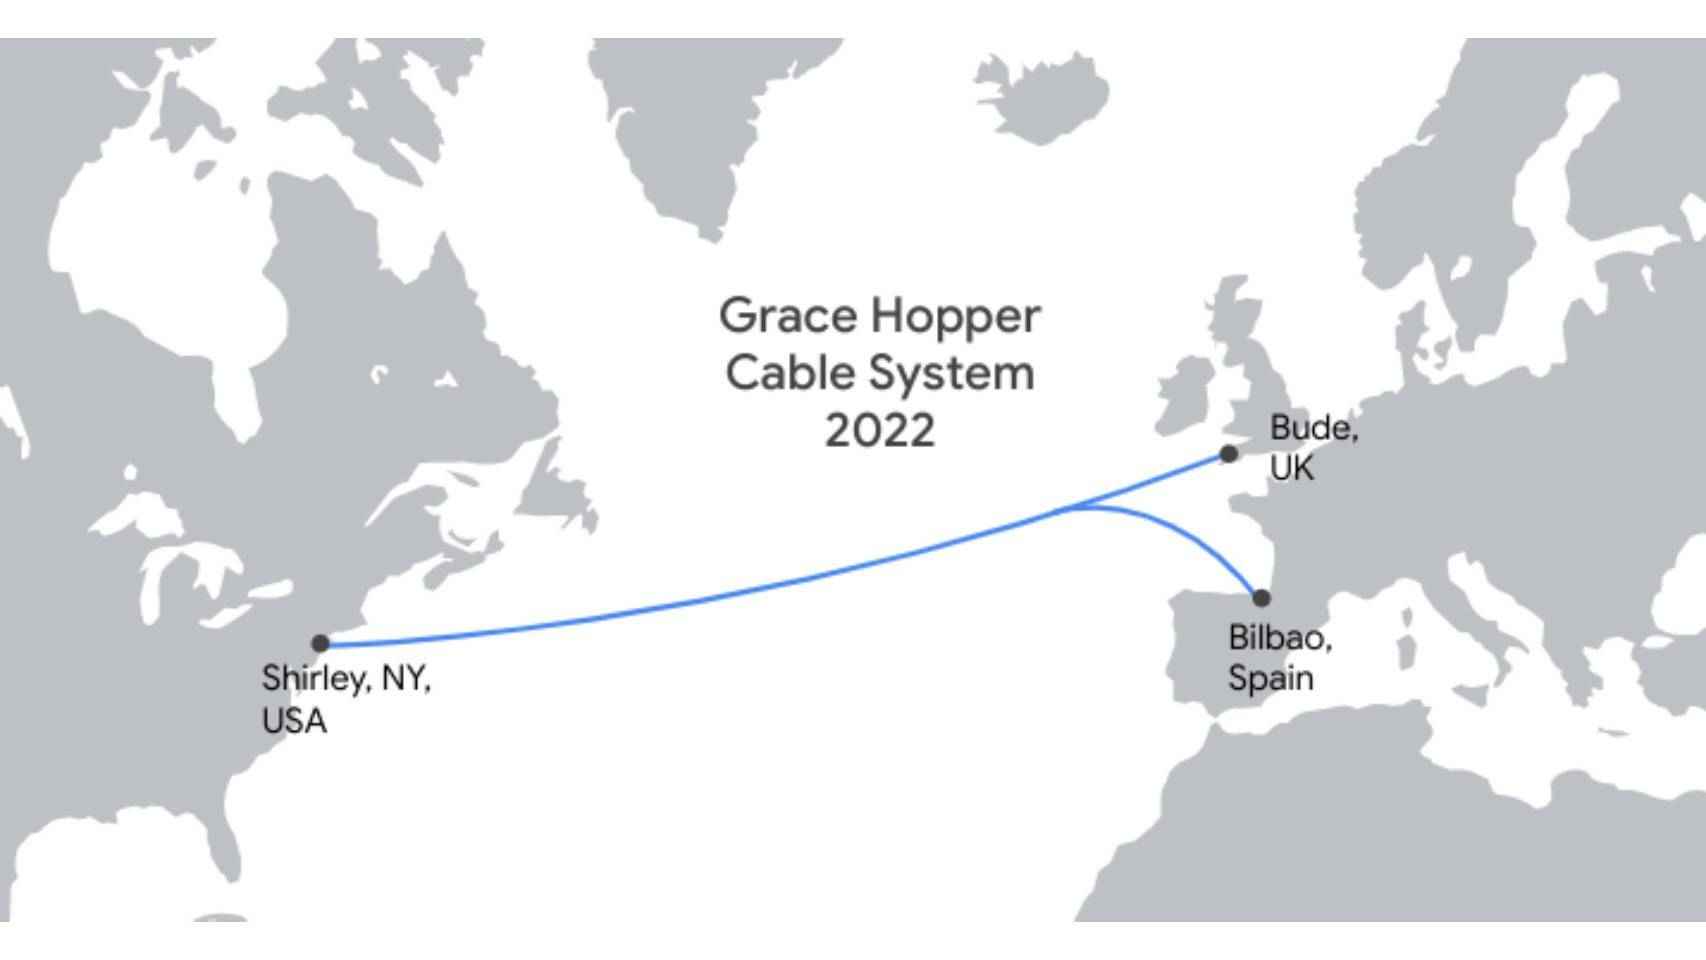 Ruta del cable Grace Hopper